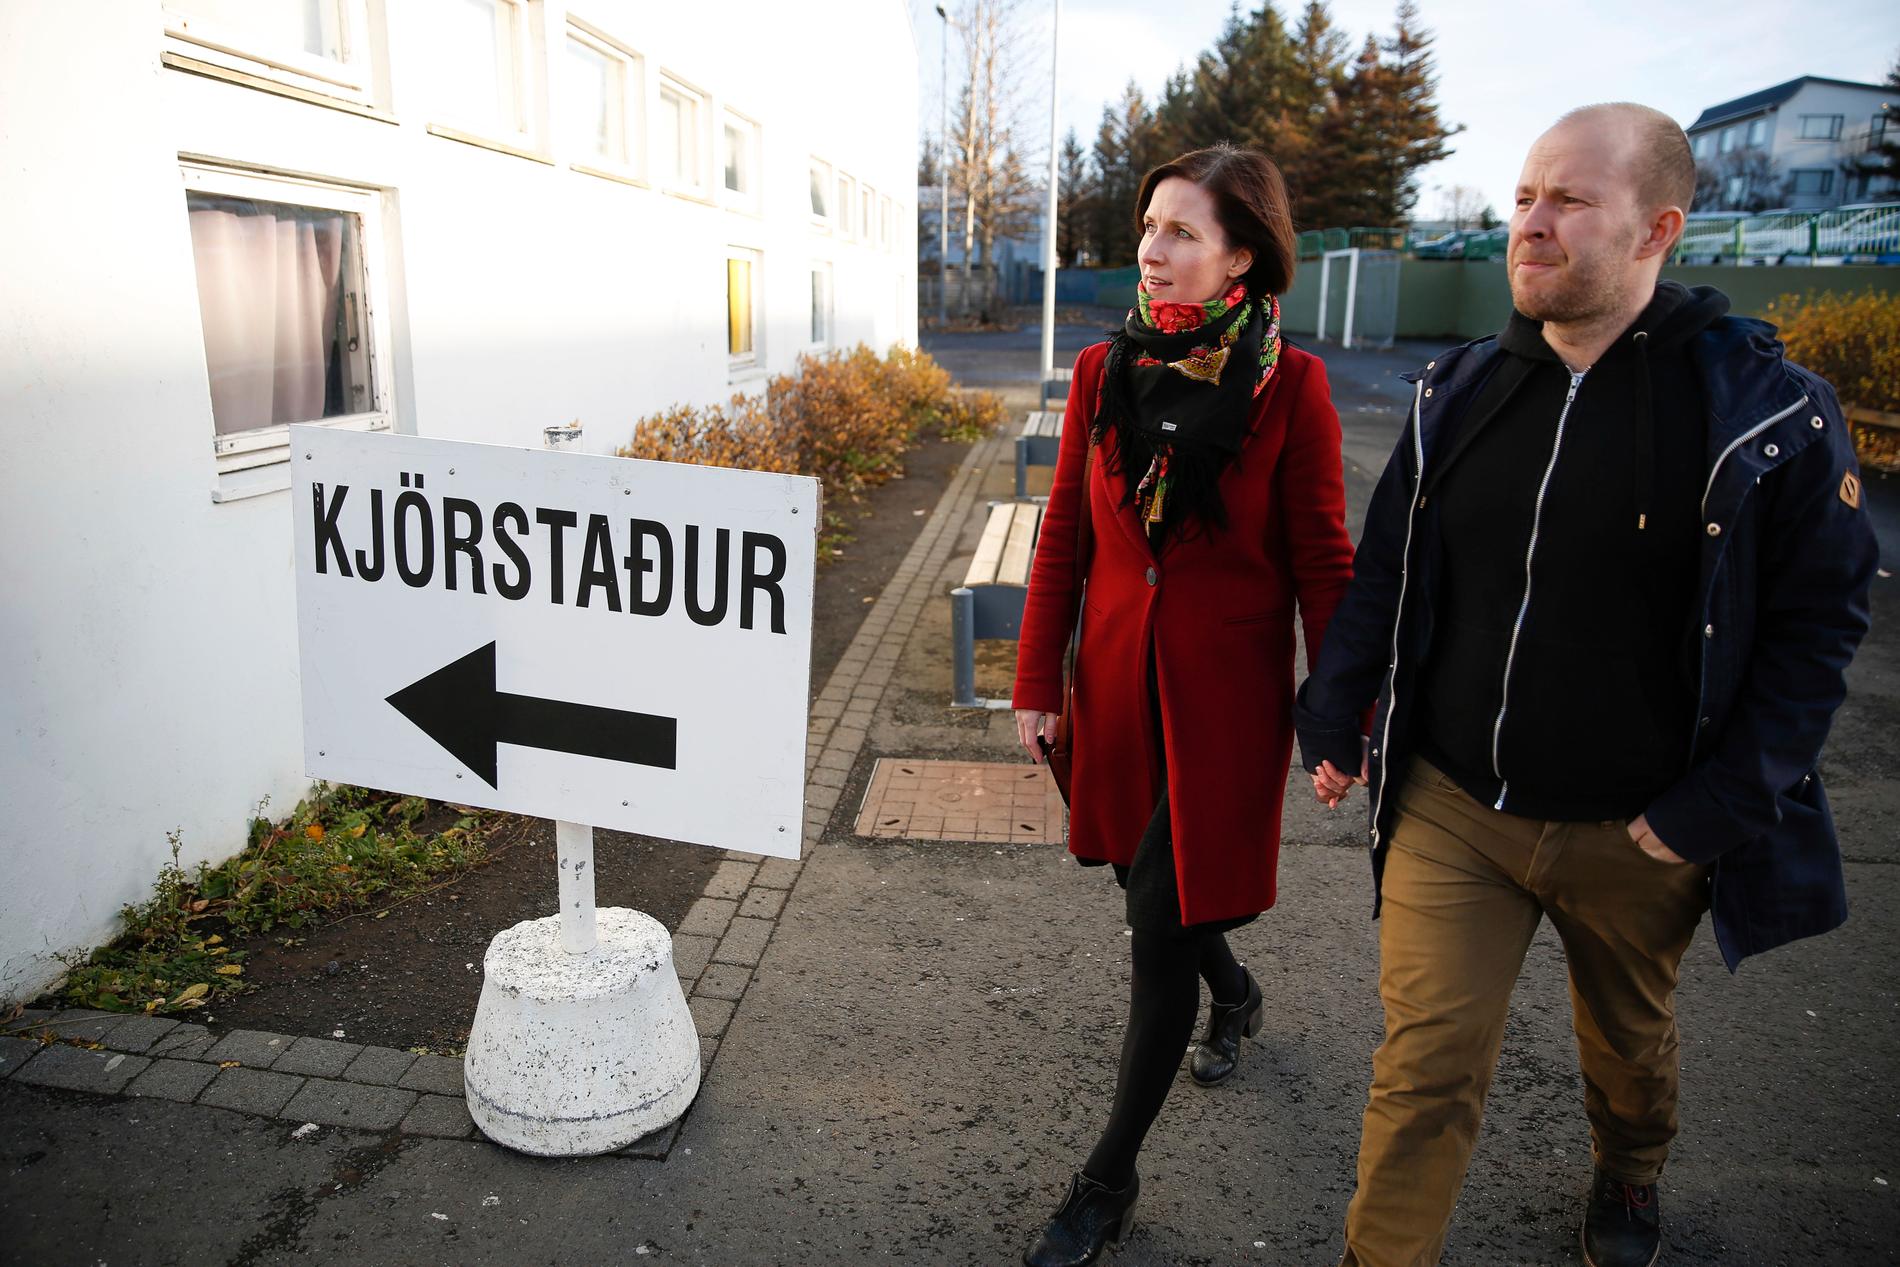 Islendinger på vei til et stemmelokale i Reykjavik. Foto: Brynjar Gunnarsson / AP / NTB scanpix